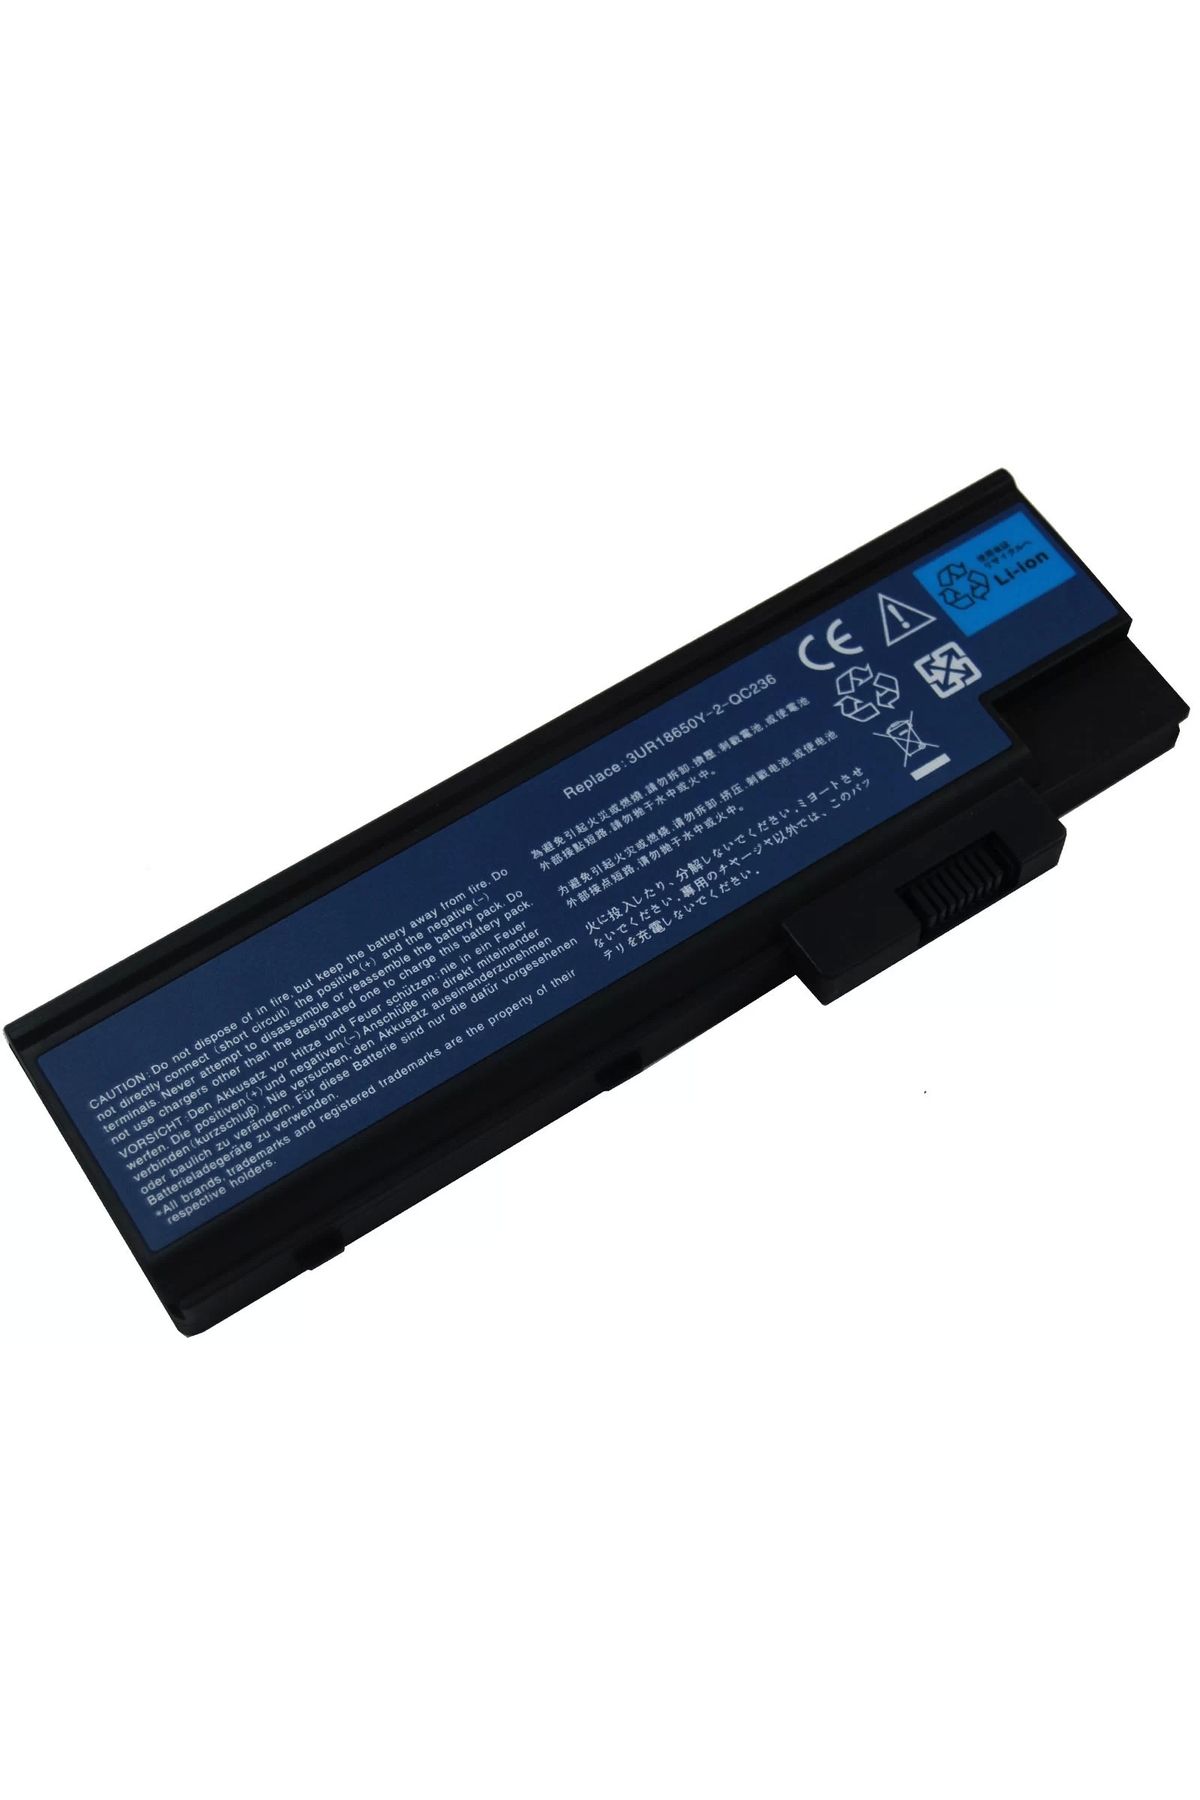 Genel Markalar Retro Acer Aspire 5600, 9300 Notebook Bataryası - 6 Cell